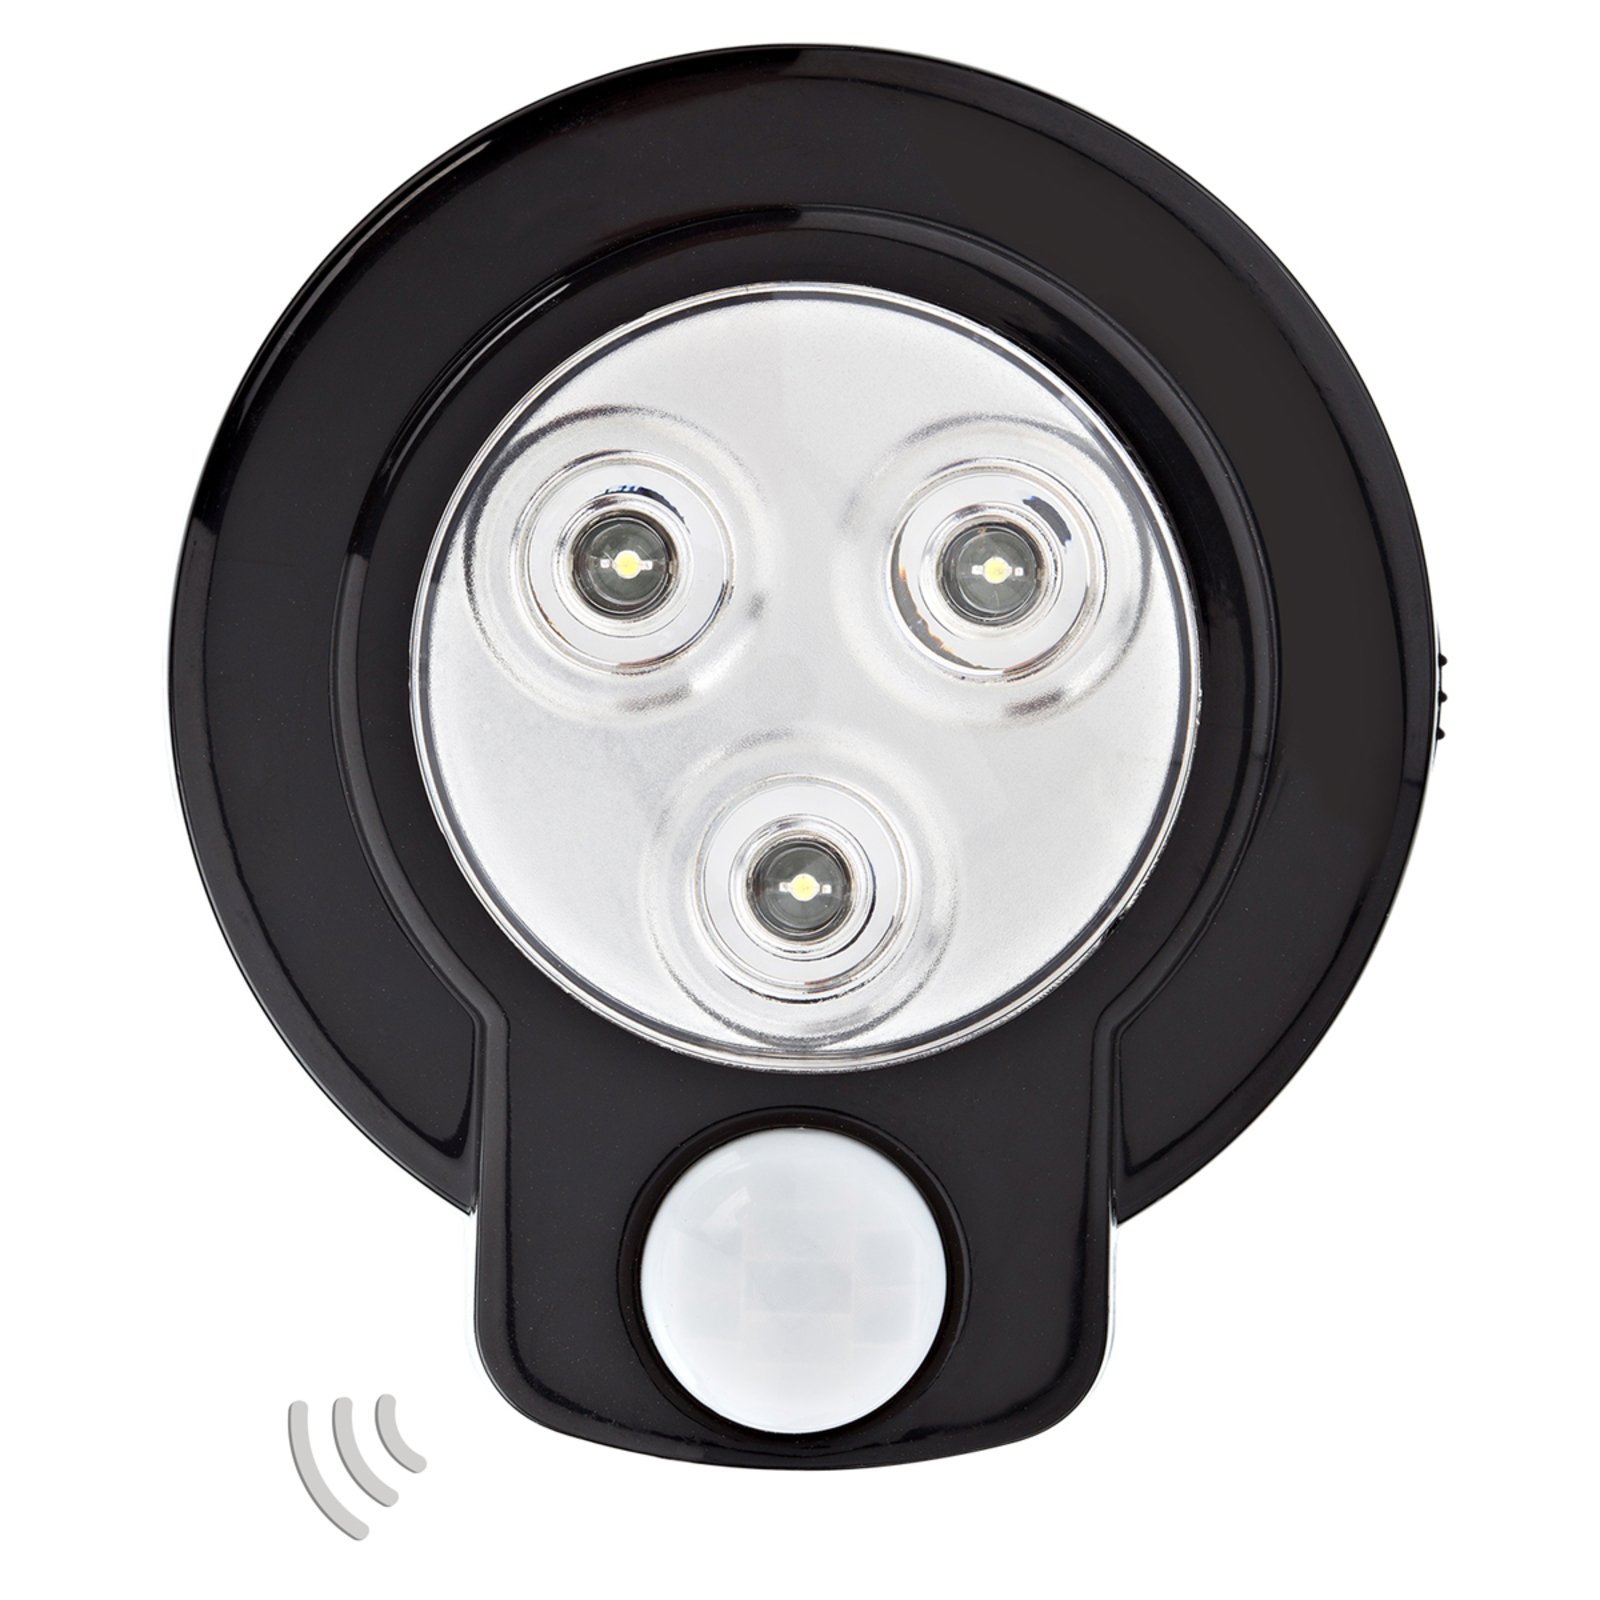 Nightlight Flex Sensor - battery-op. night light